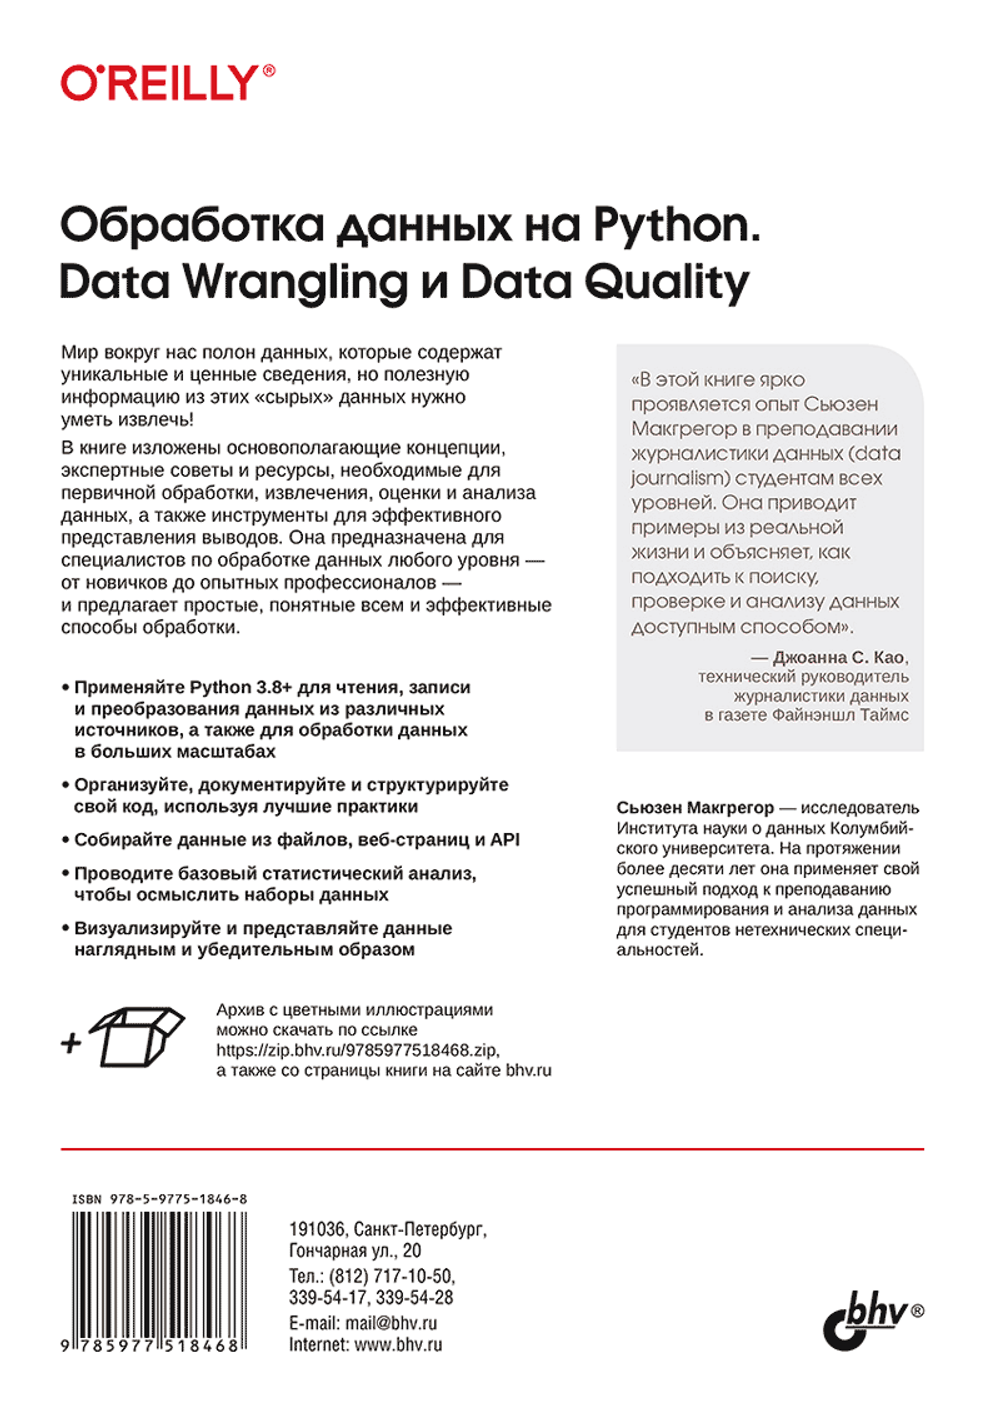 Книга: Макгрегор С.  "Обработка данных на Python. Data Wrangling и Data Quality"